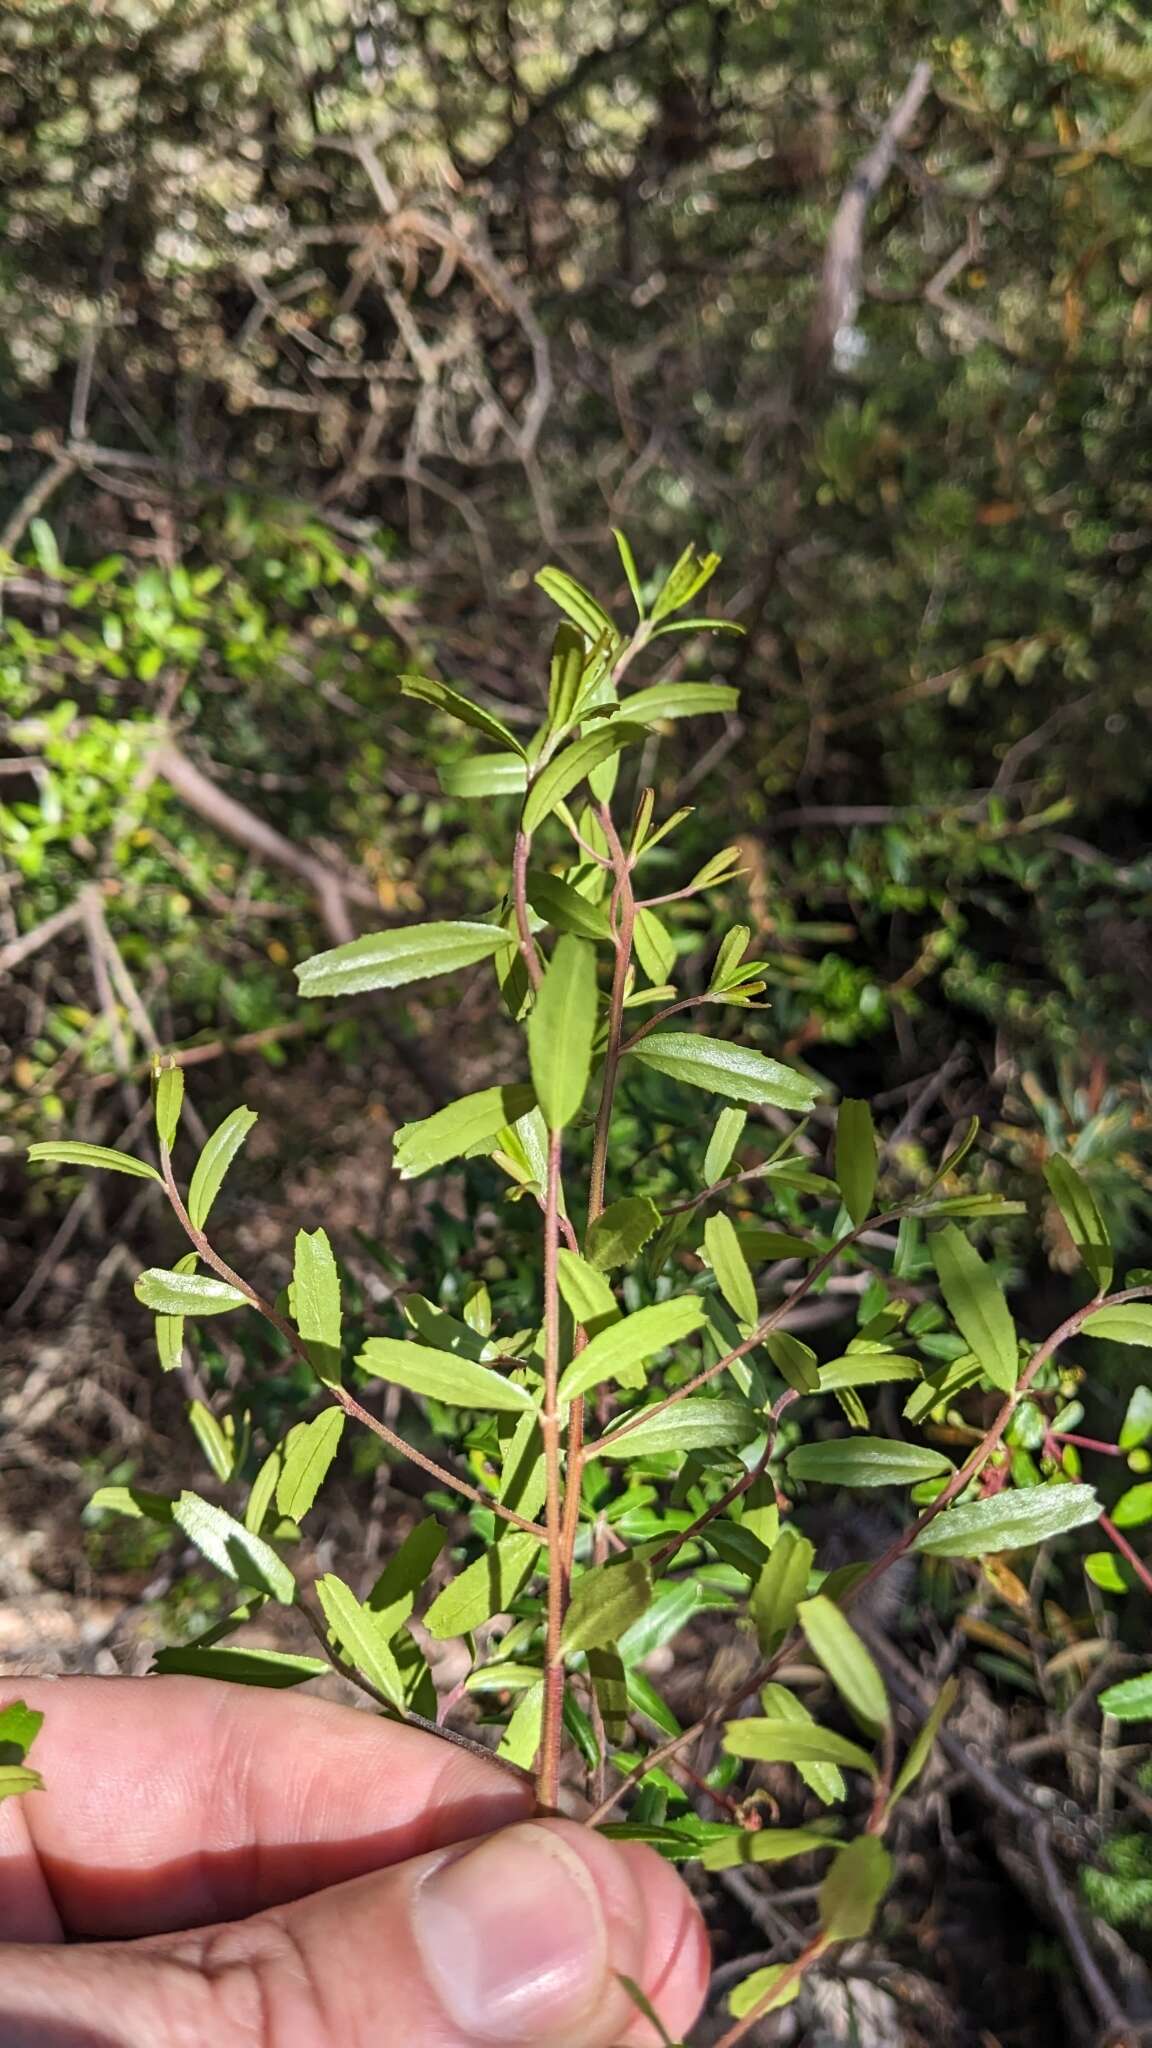 Image of Leionema bilobum subsp. truncatum (Hook. fil.) Duretto & K. L. Durham